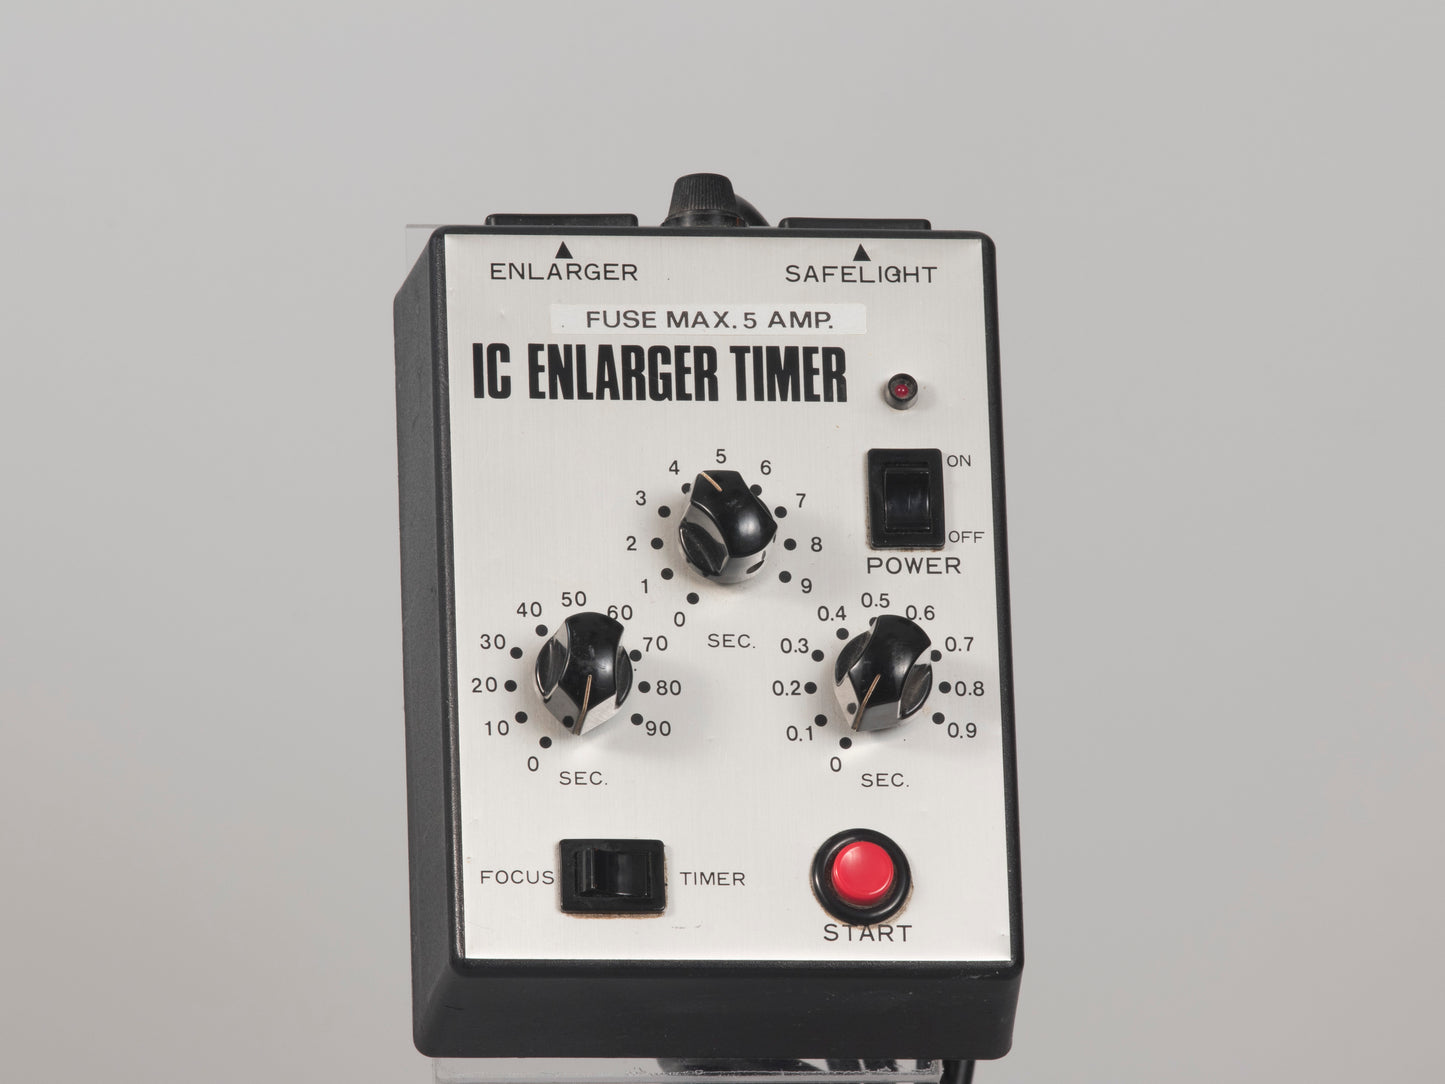 IC Enlarger Timer